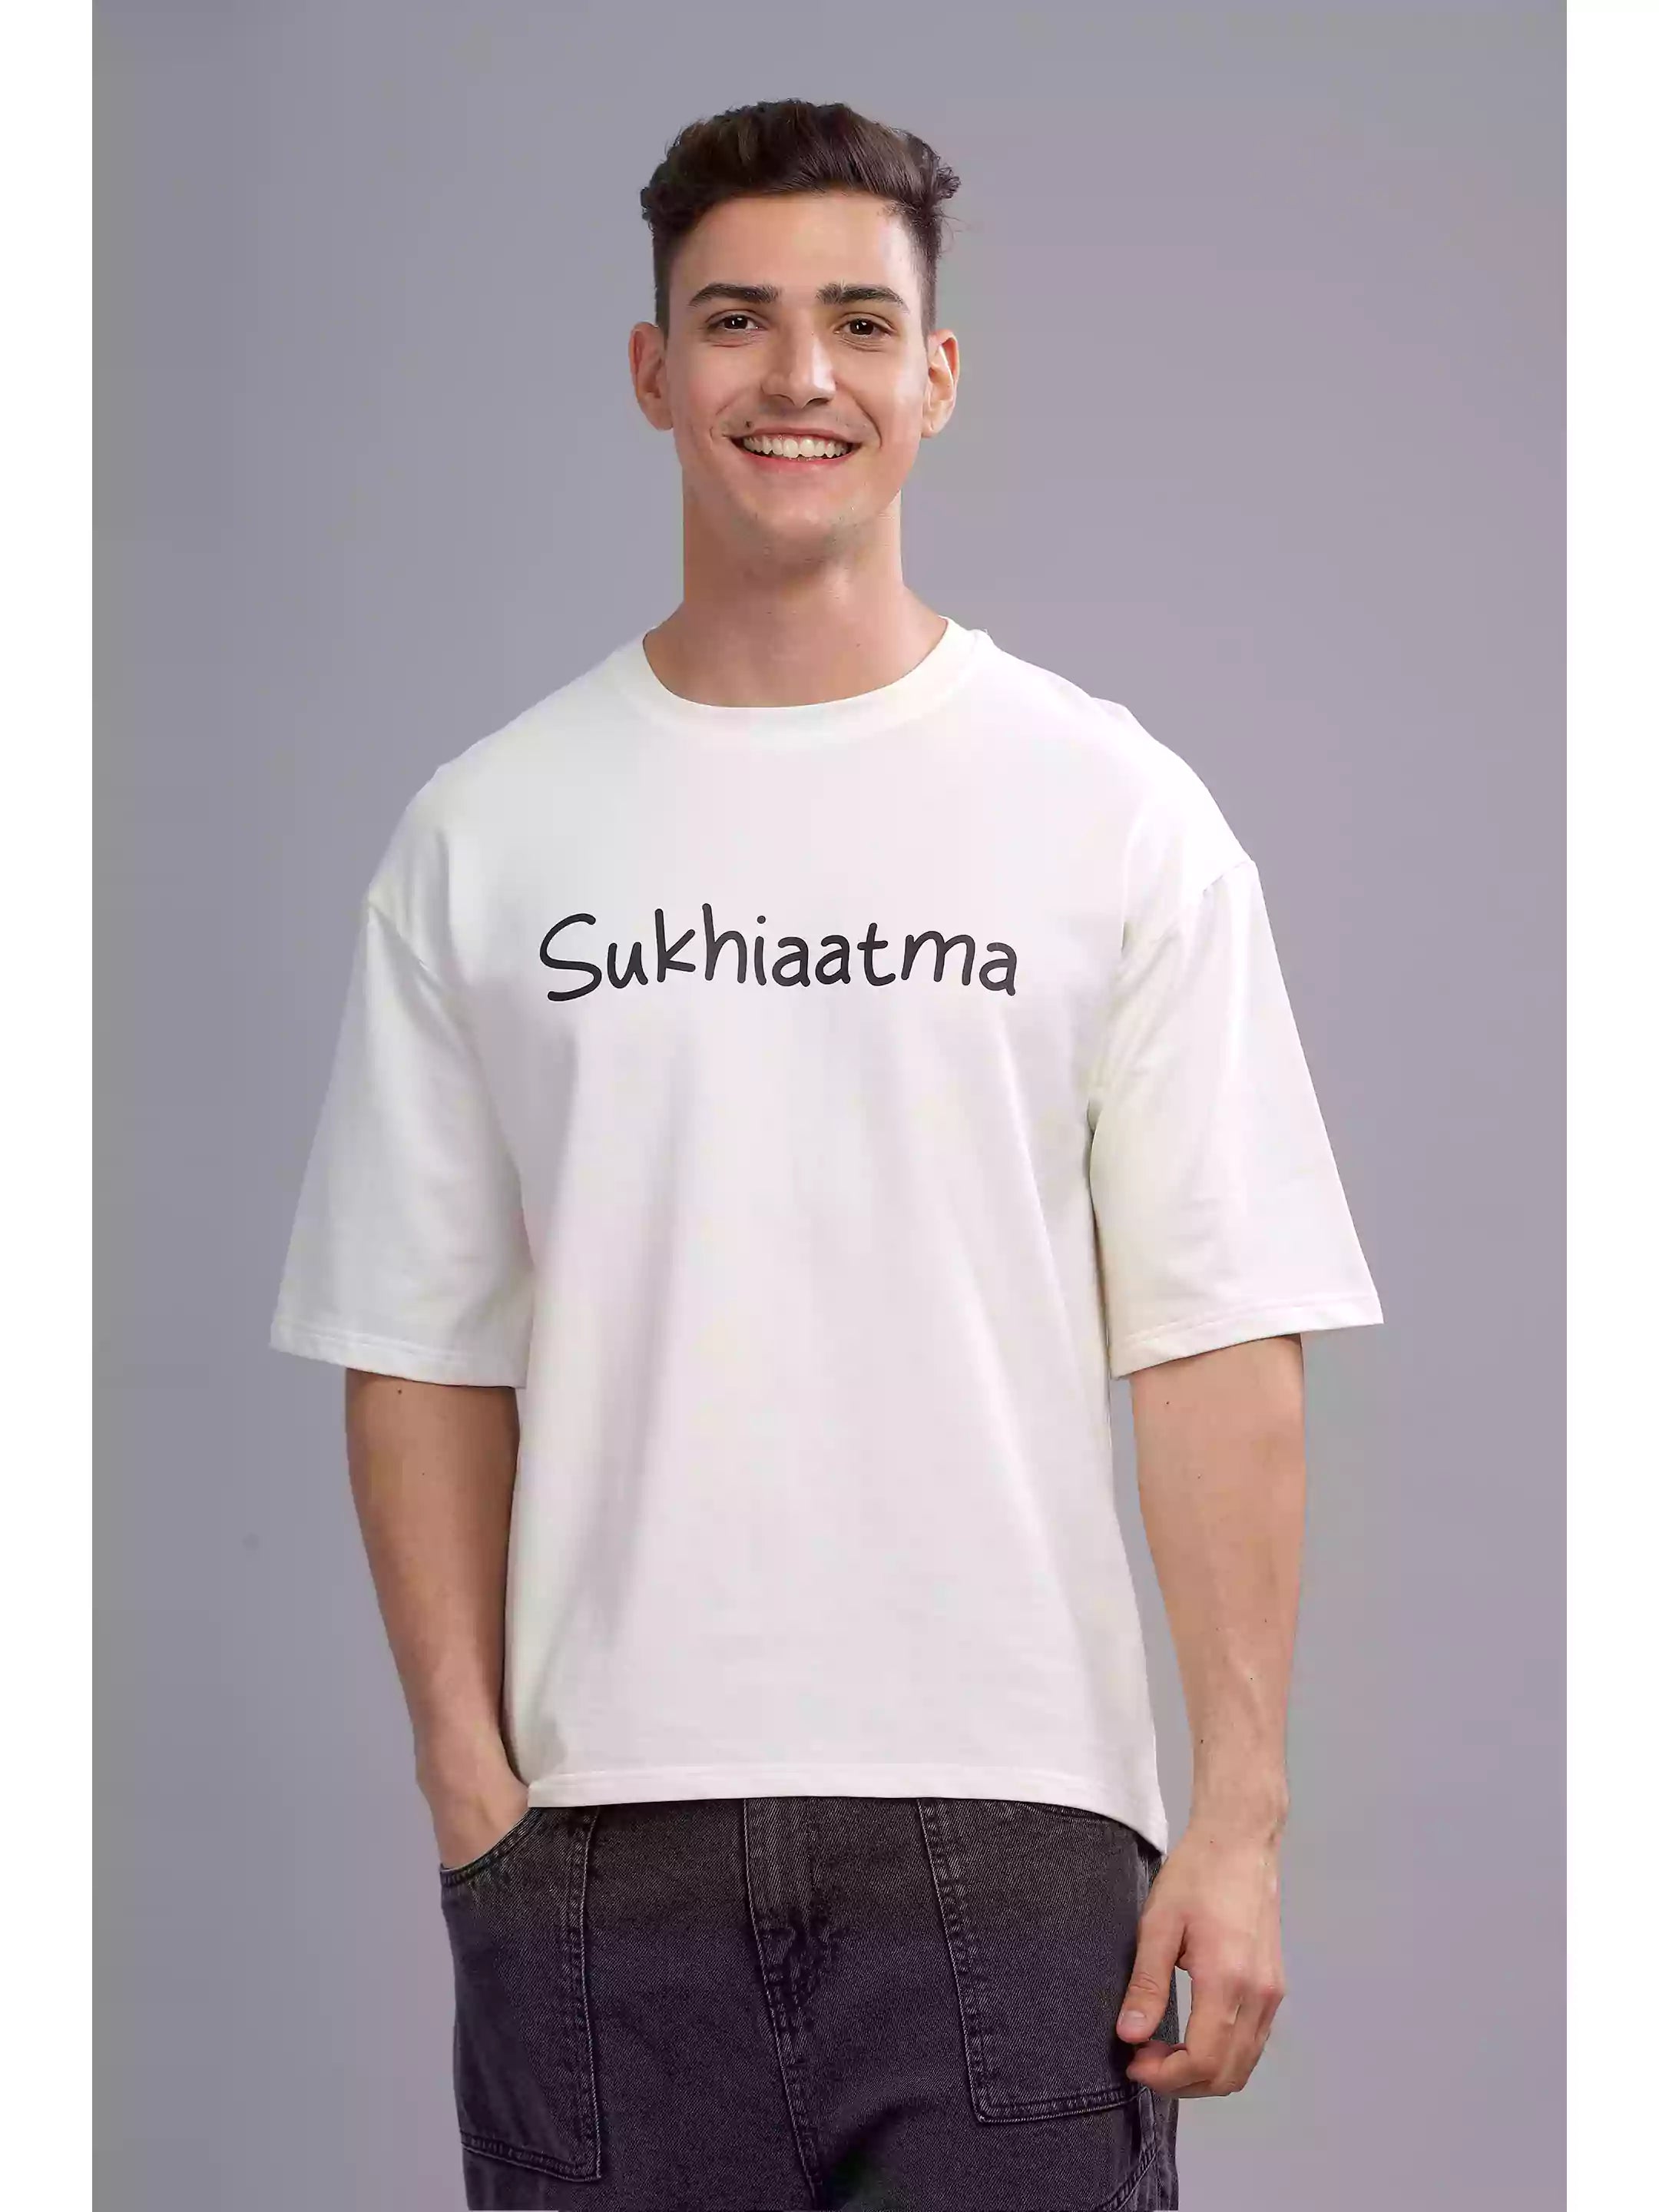 You Can - Sukhiaatma Unisex Oversize White T-shirt